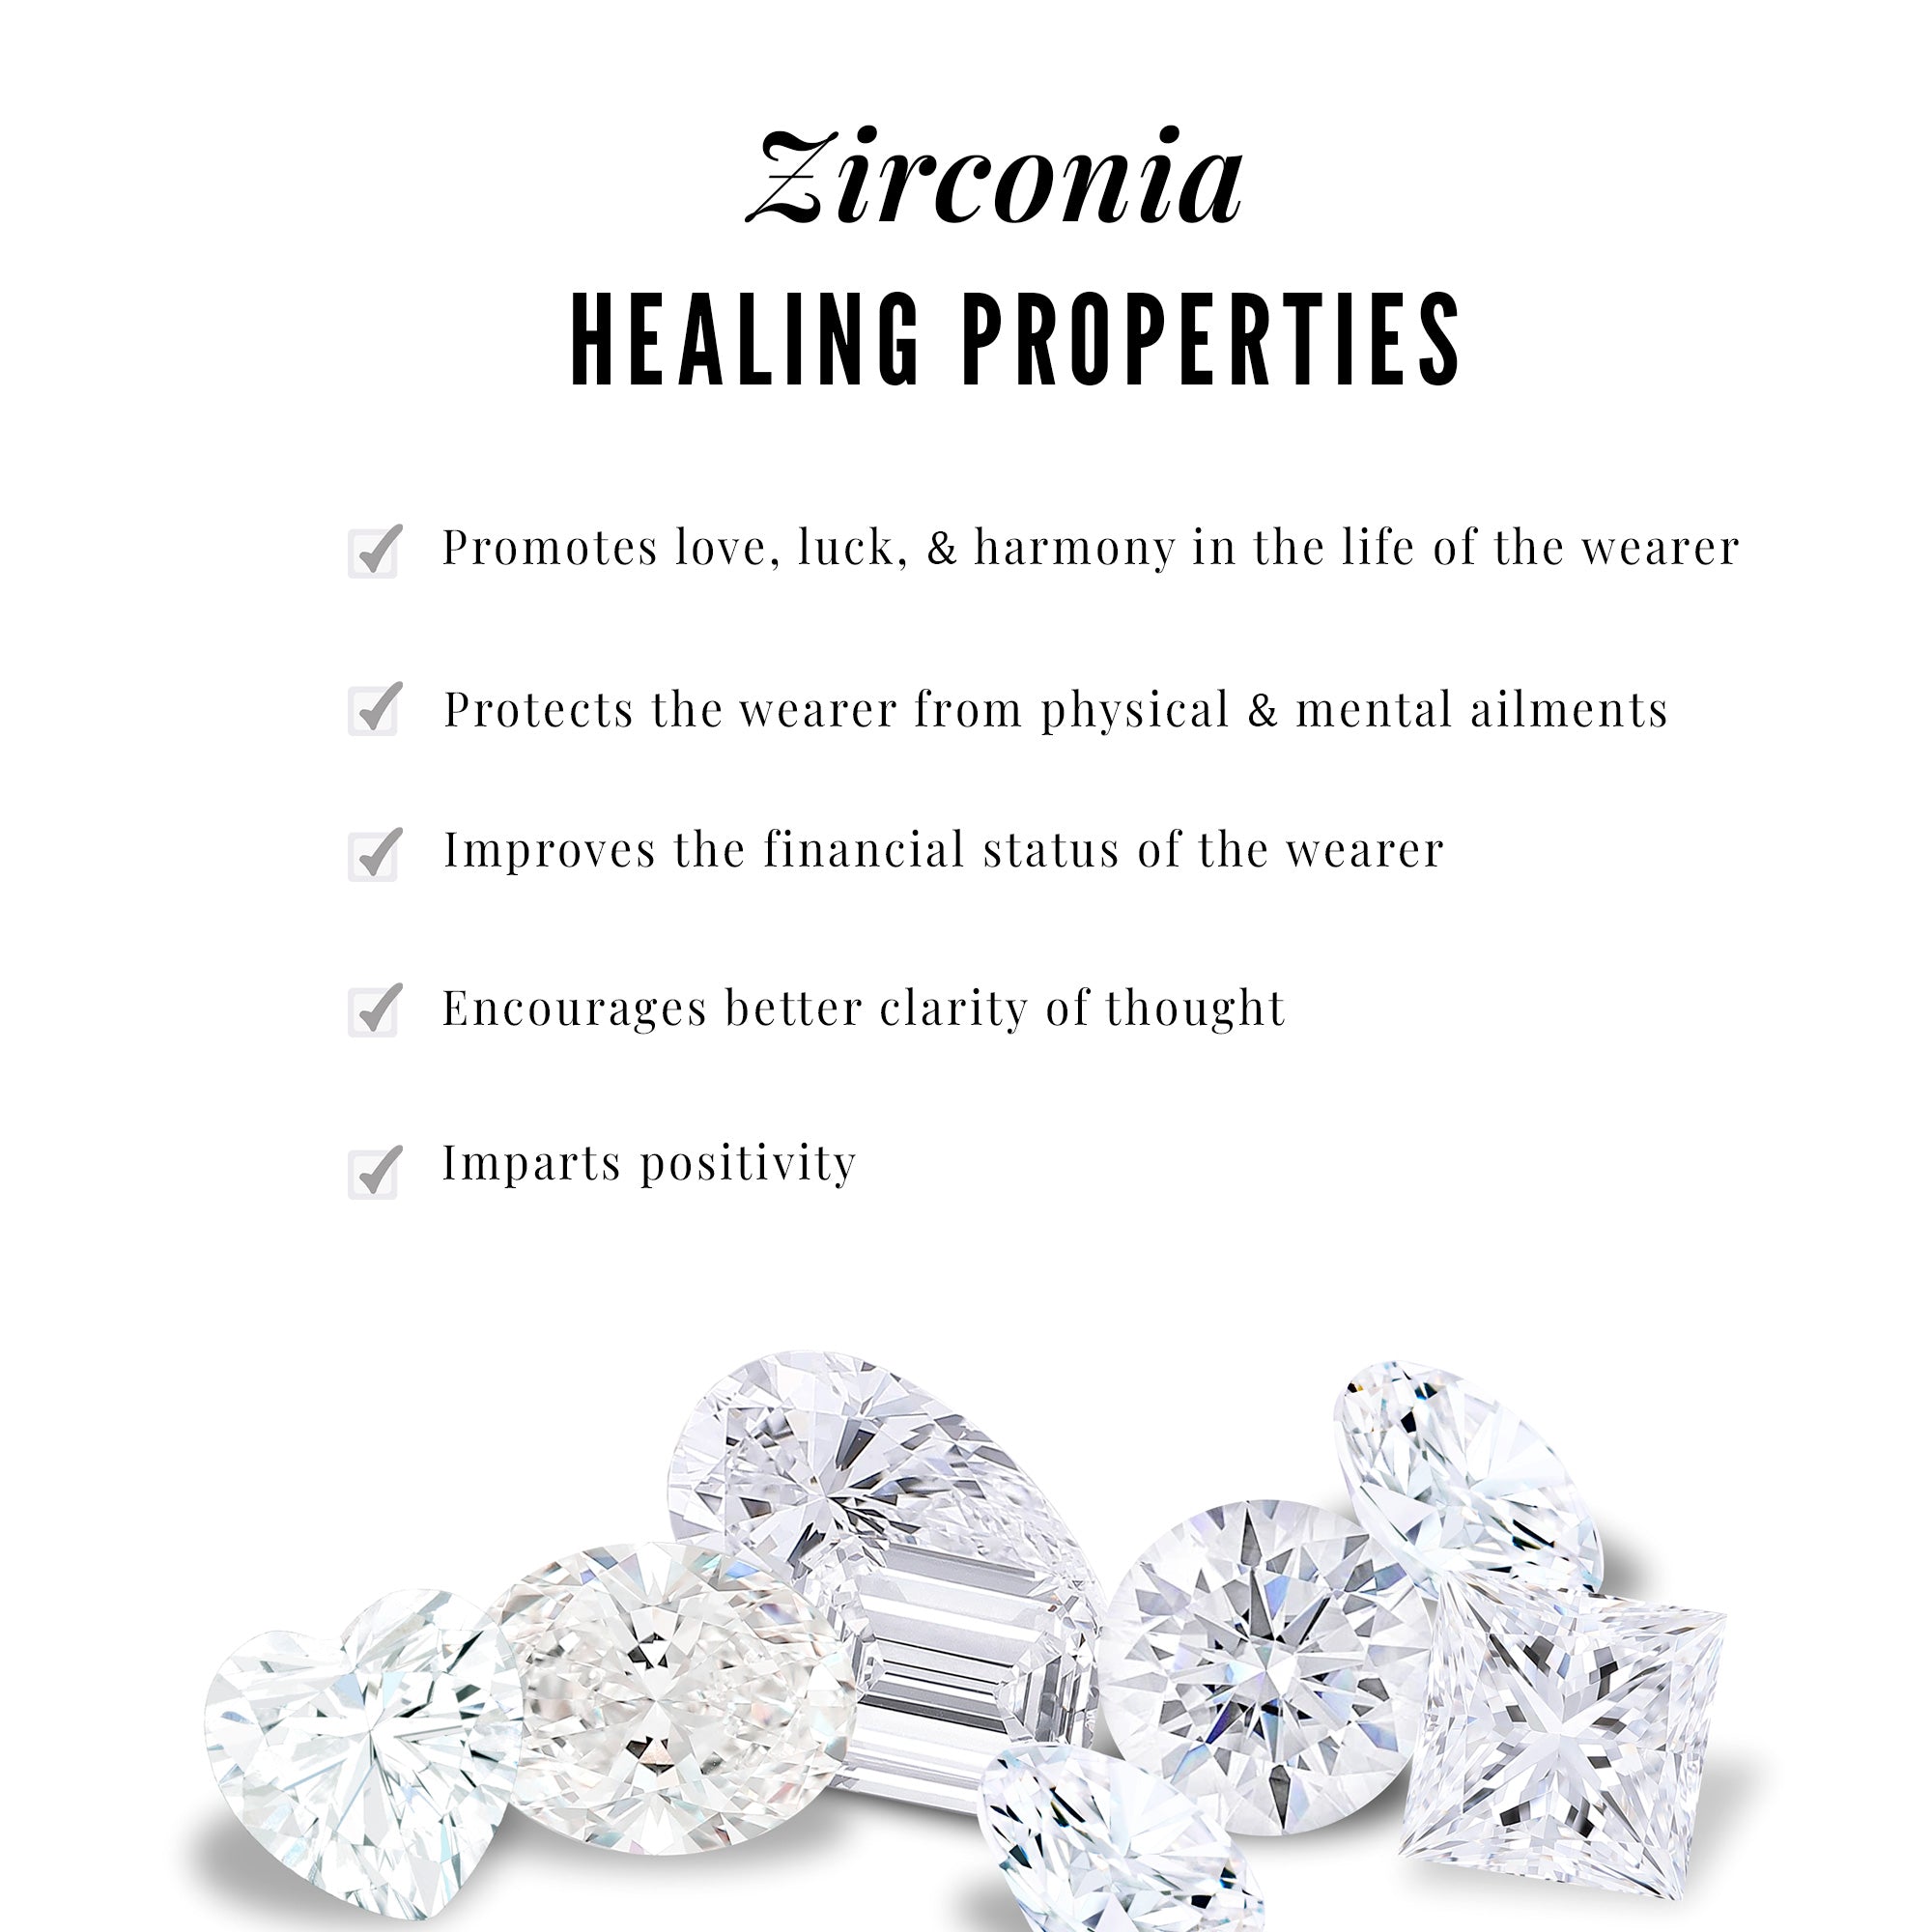 Dainty Zircon Screw Back Stud Earrings Zircon - ( AAAA ) - Quality - Rosec Jewels